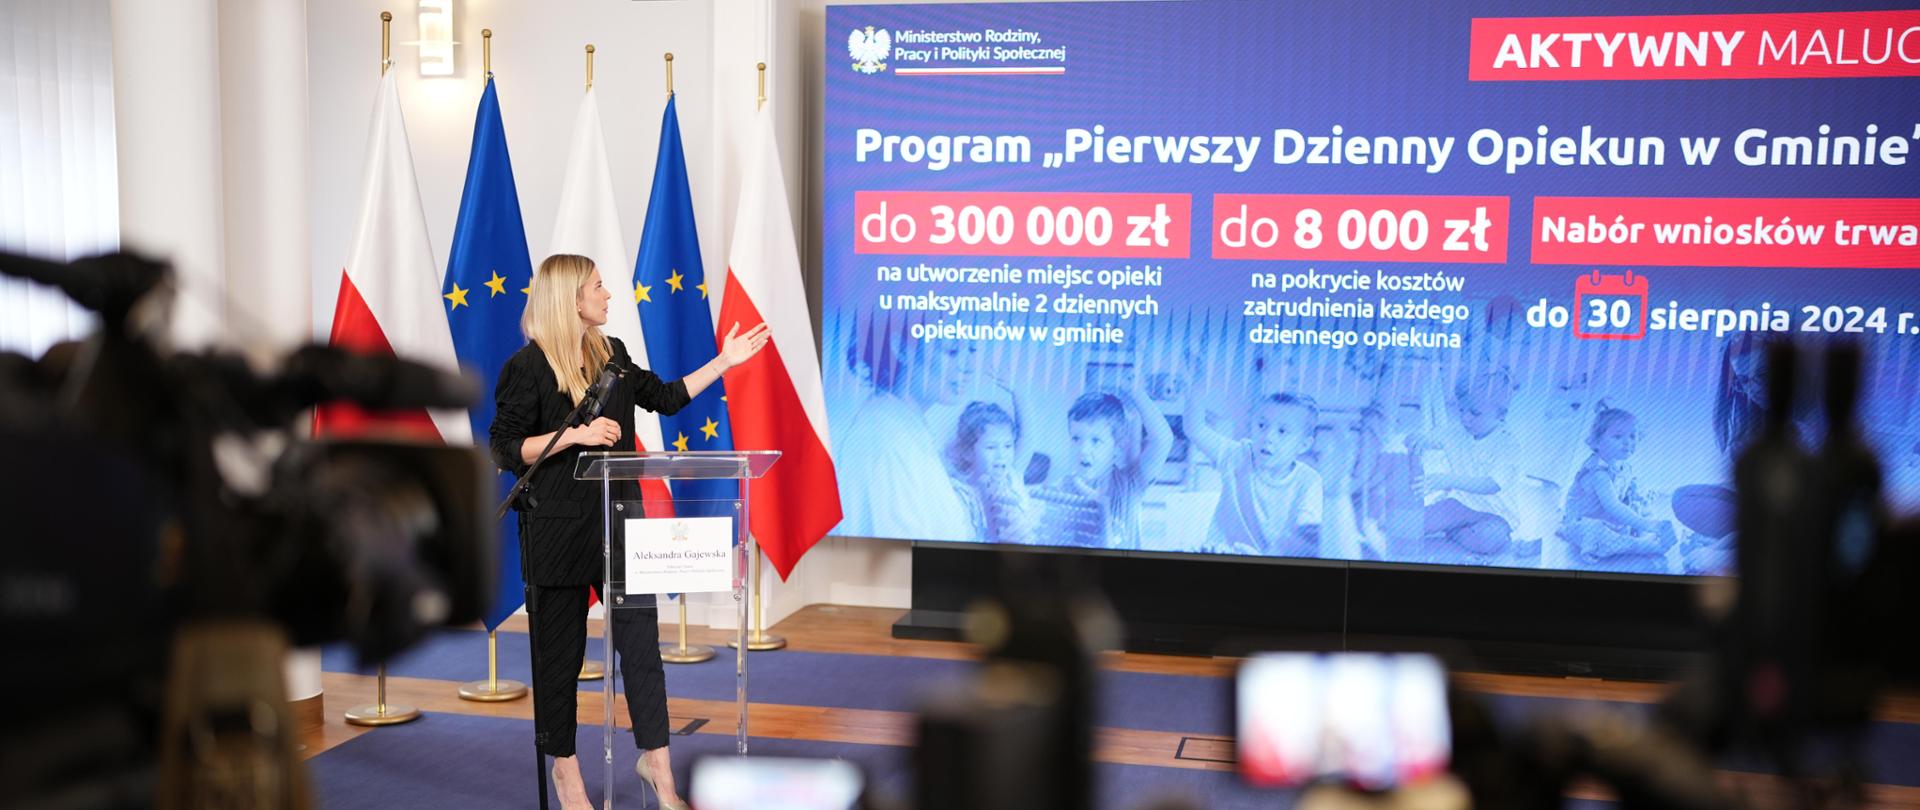 Program „Pierwszy dzienny opiekun” to 60 milionów złotych dla gmin w których nie ma żadnego żłobka